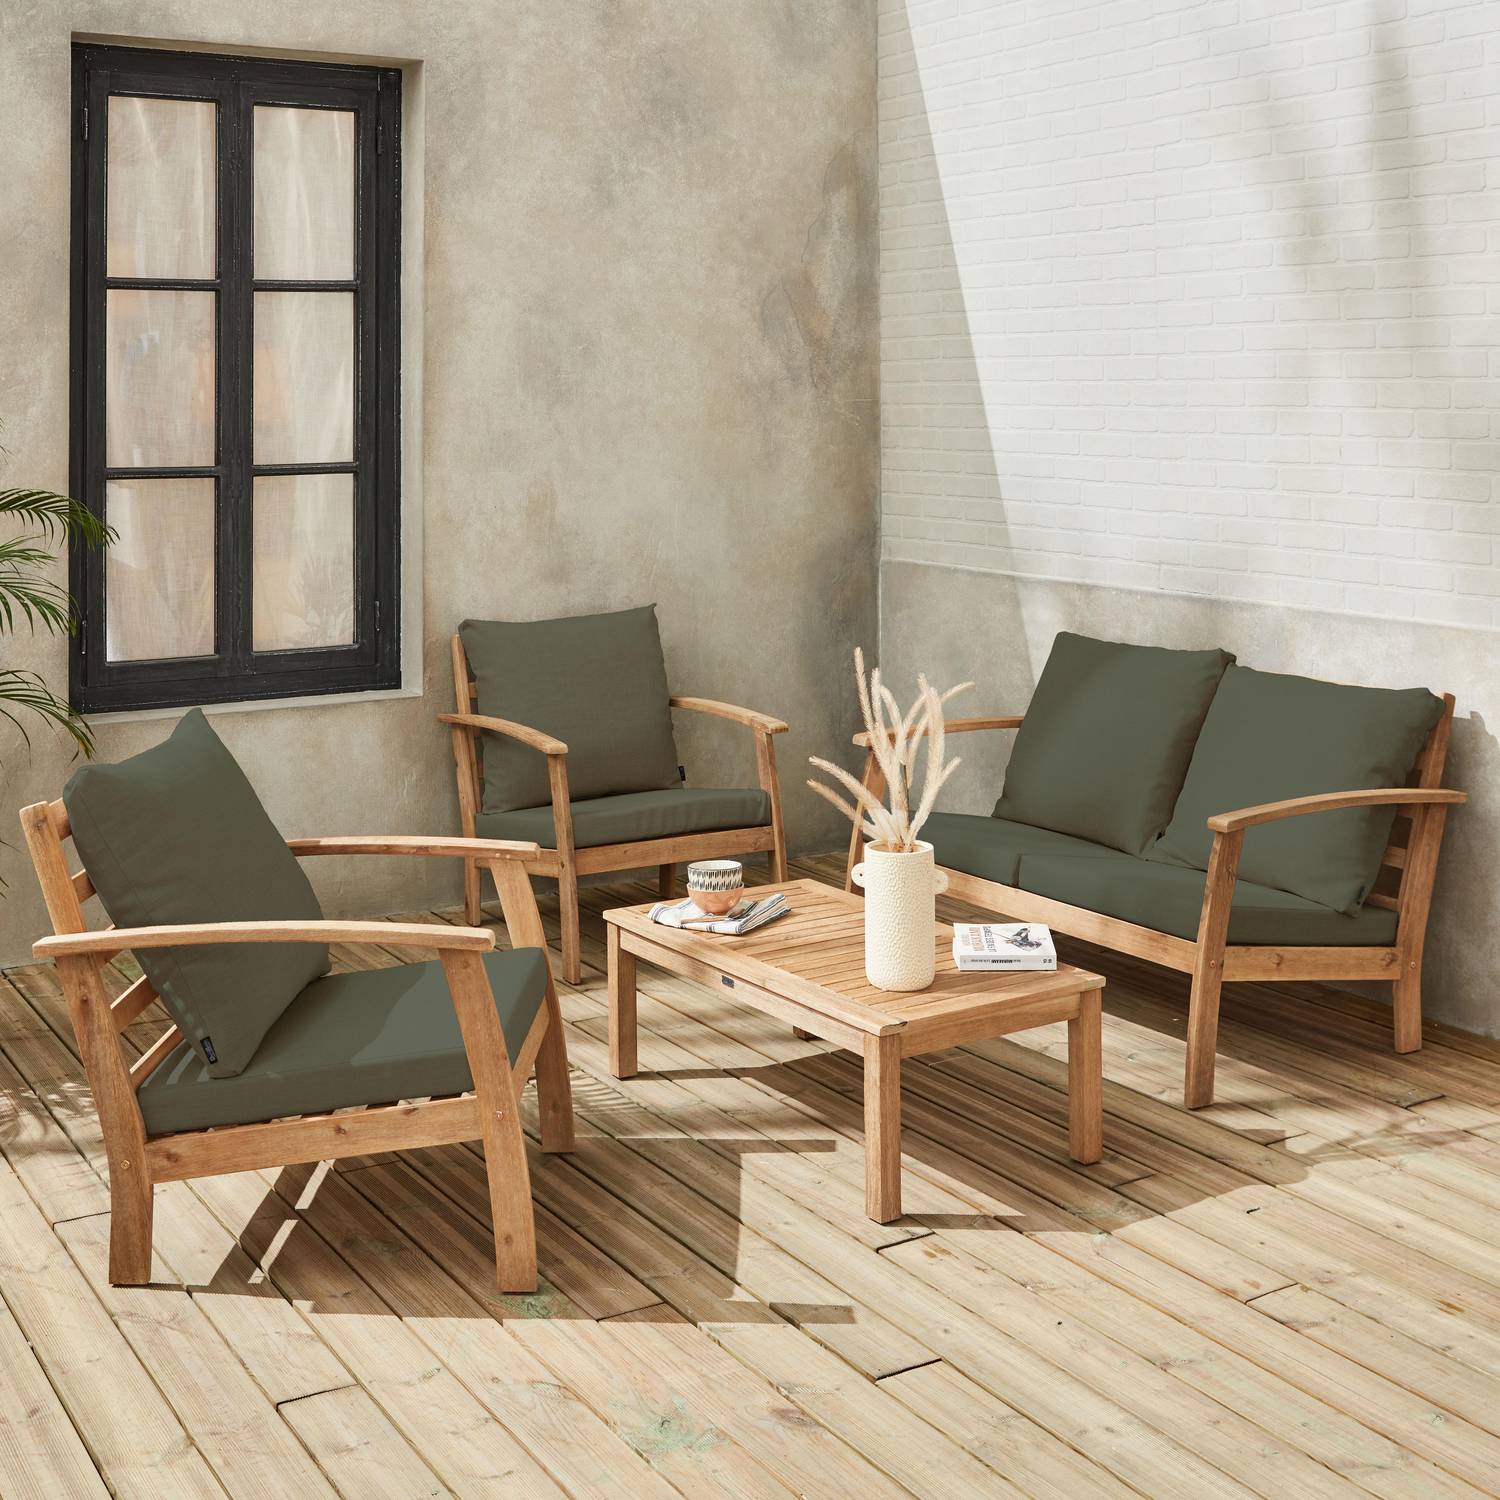 Salon de jardin en bois 4 places - Ushuaïa - Coussins Savane, canapé, fauteuils et table basse en acacia, design Photo2